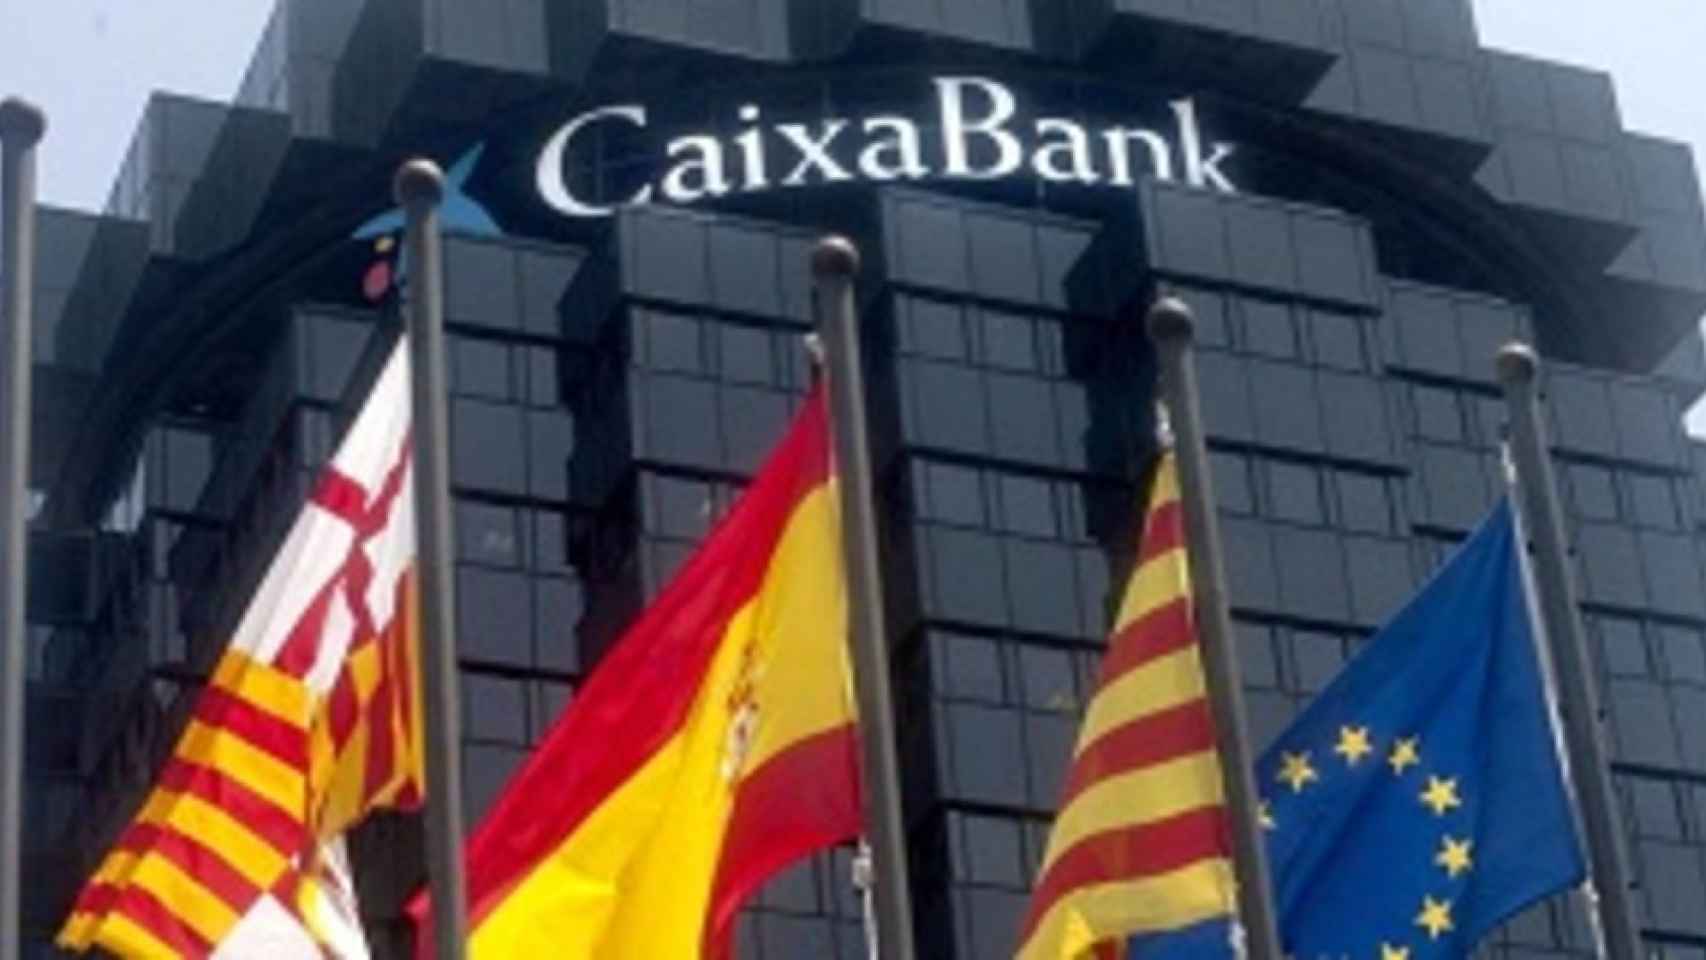 Caso omiso a la llamada de ANC y Omnium a retirar efectivo:la banca habla de normalidad en las sucursales catalanas